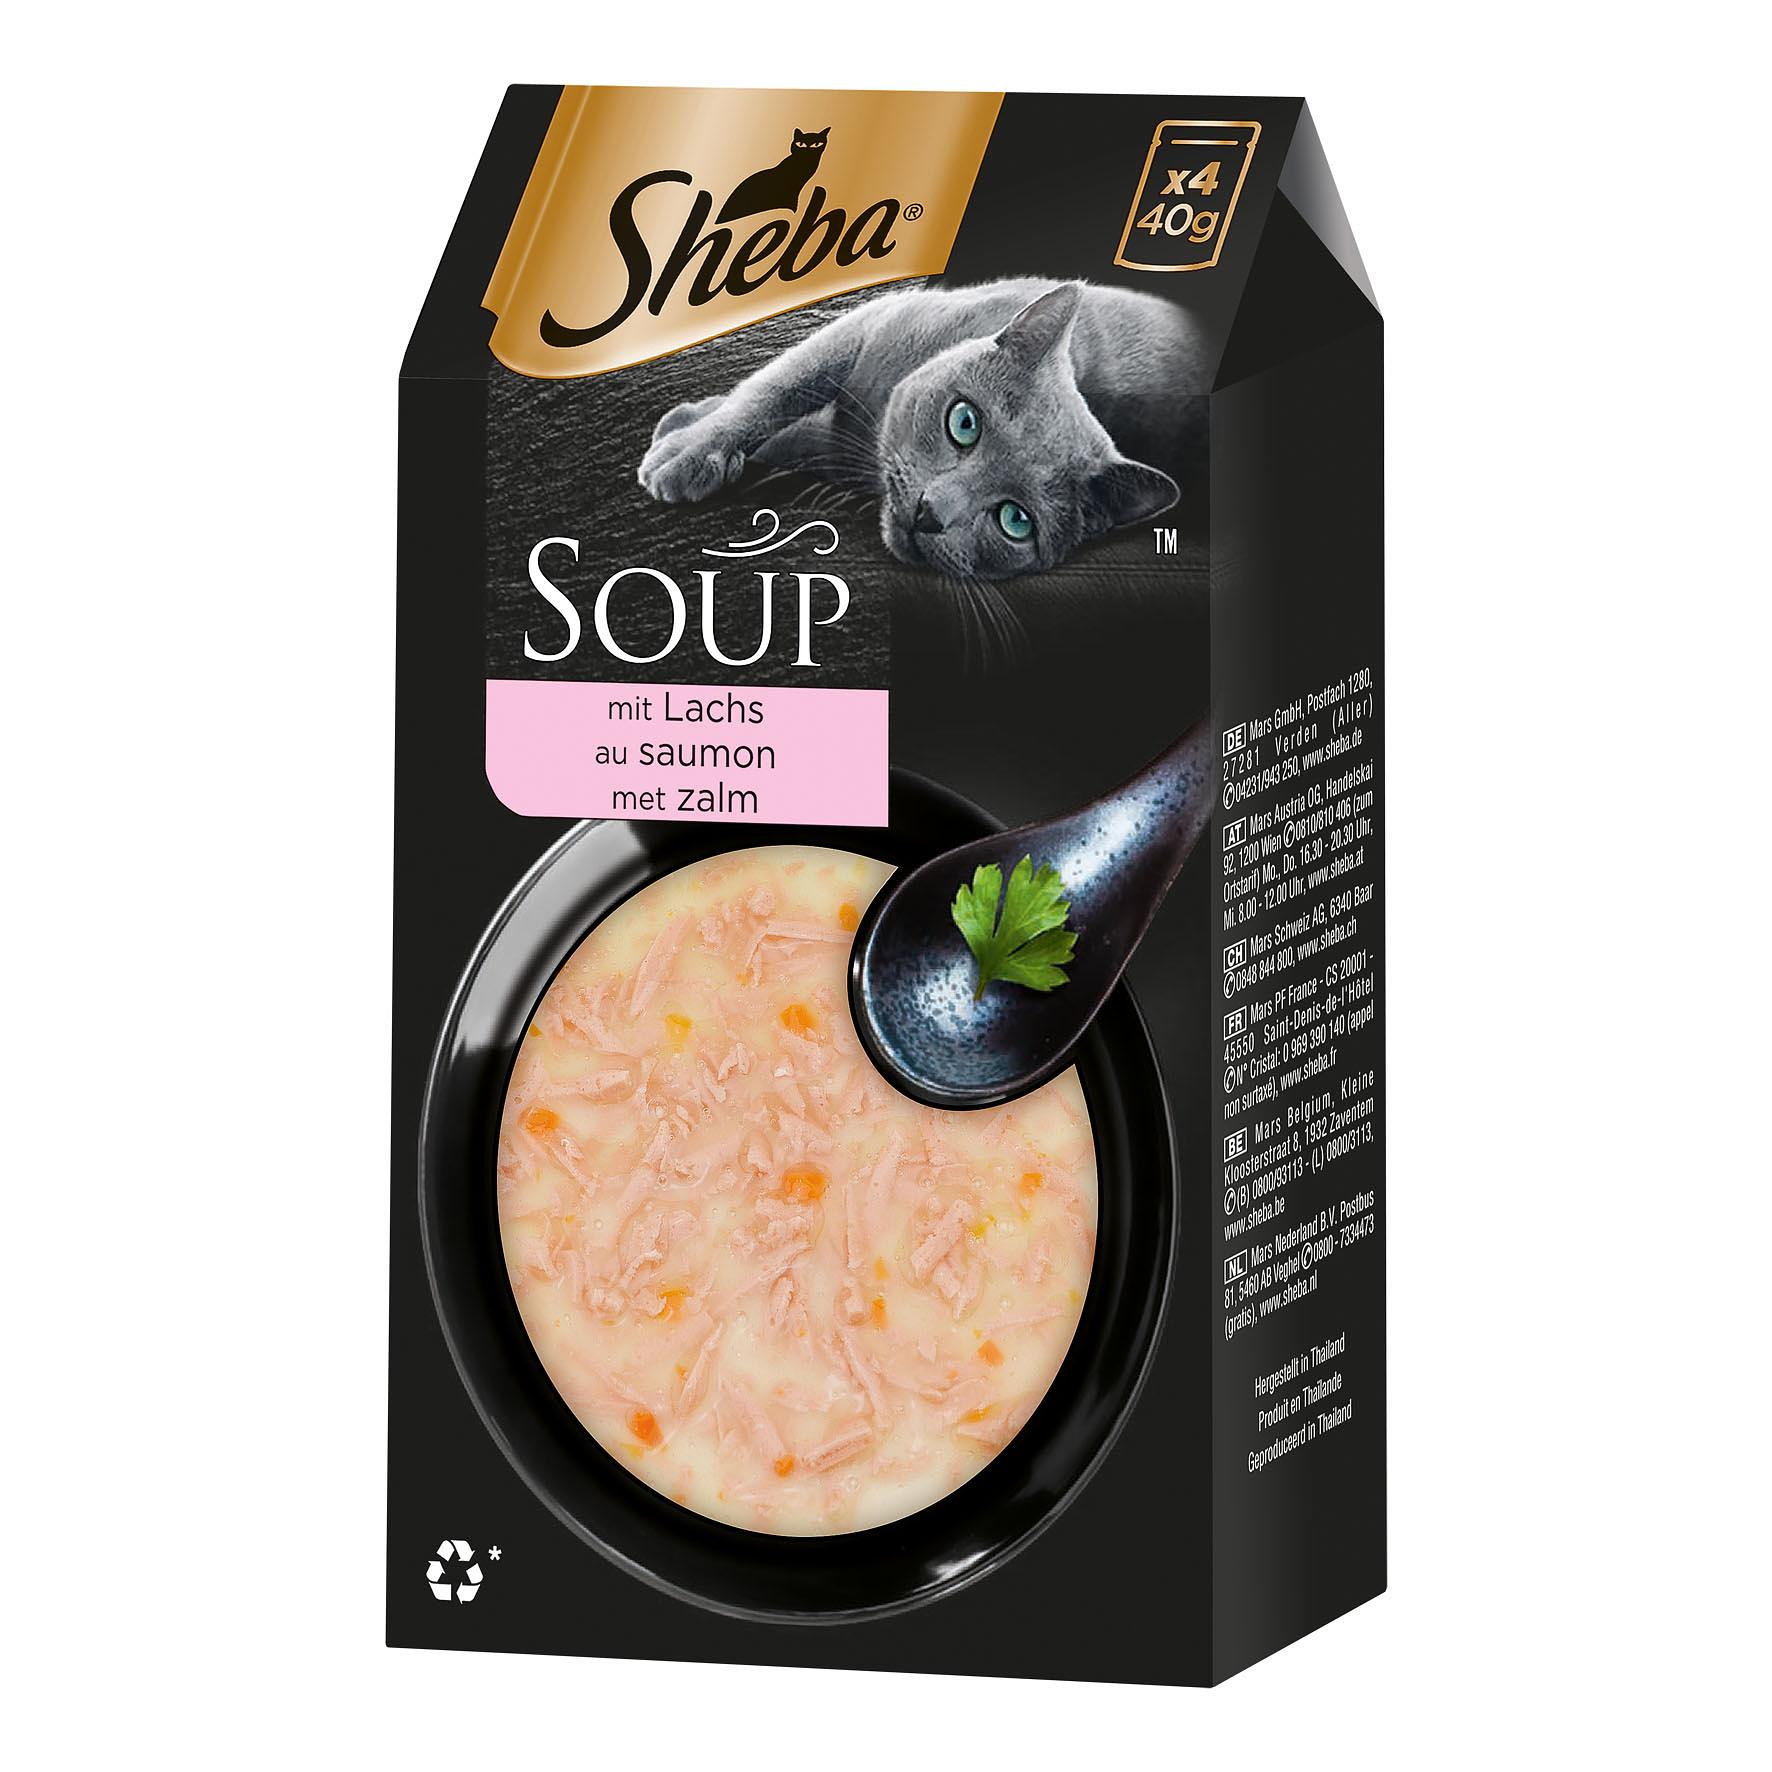 Sheba Soup avec Saumon, 4x40g